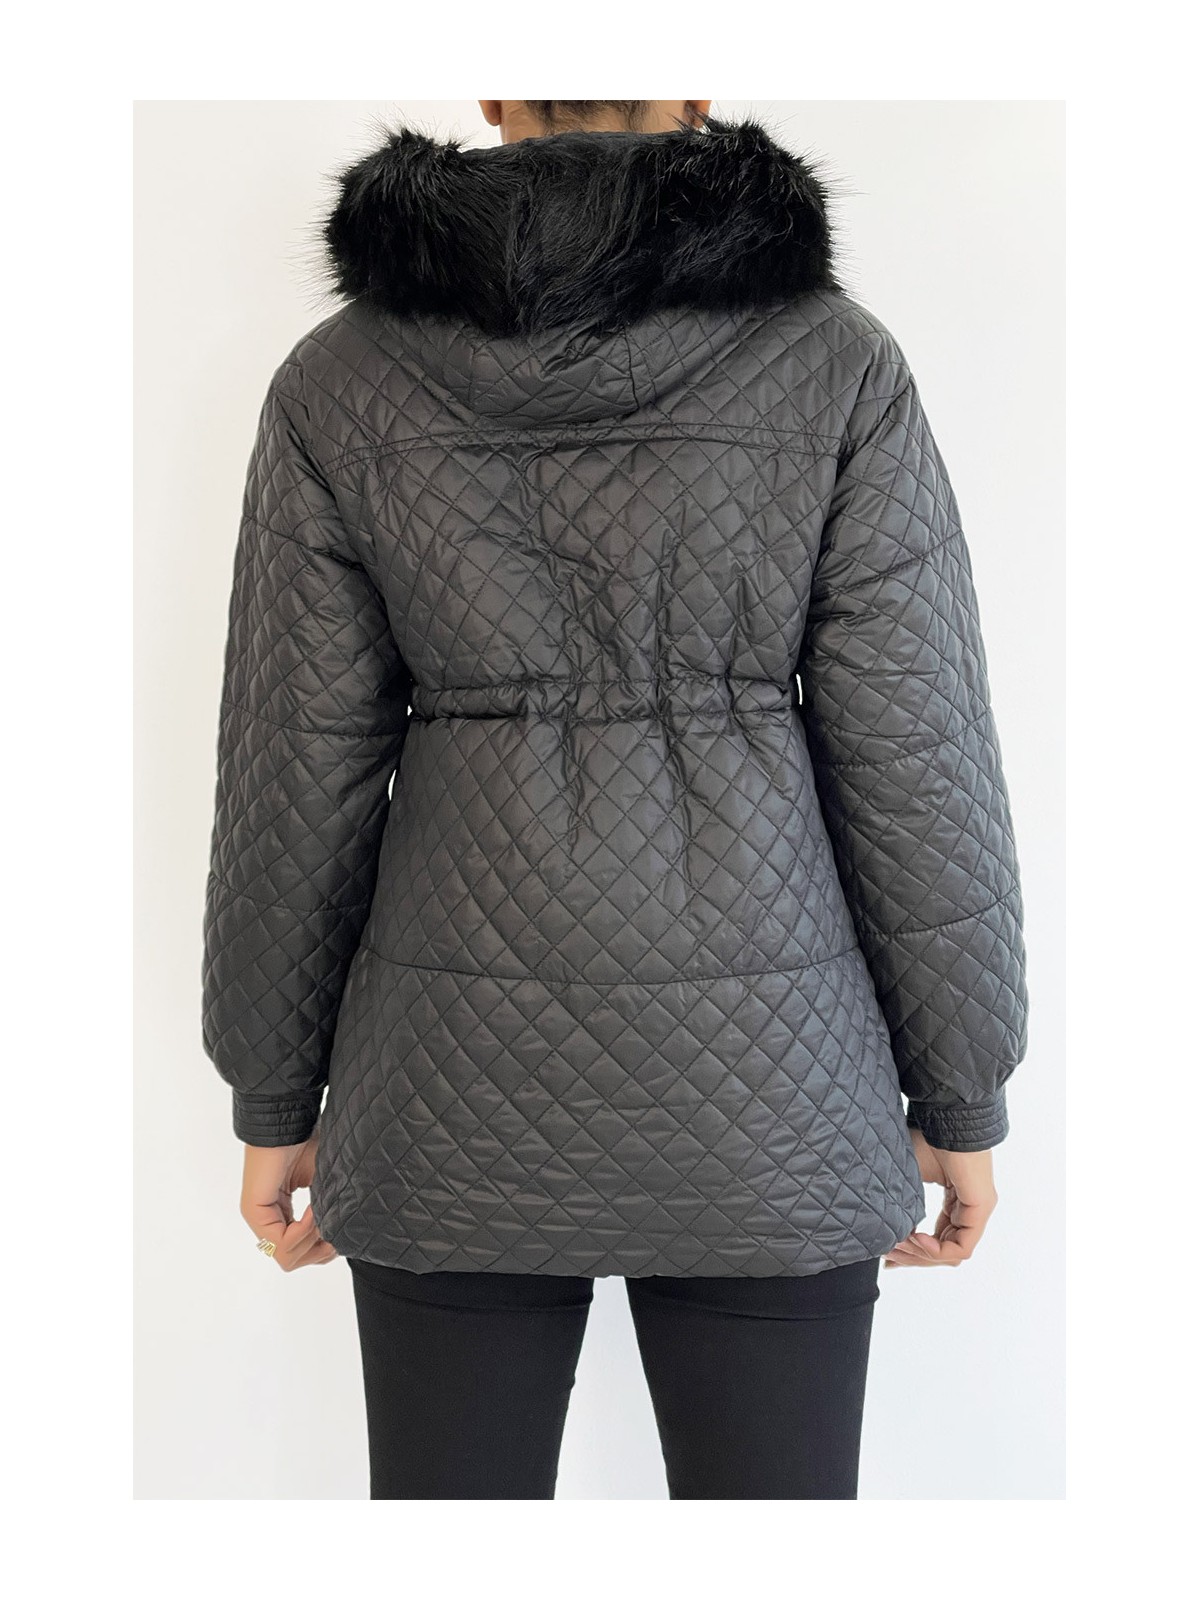 Manteau matelassé multi-poches noir à capuche - 4